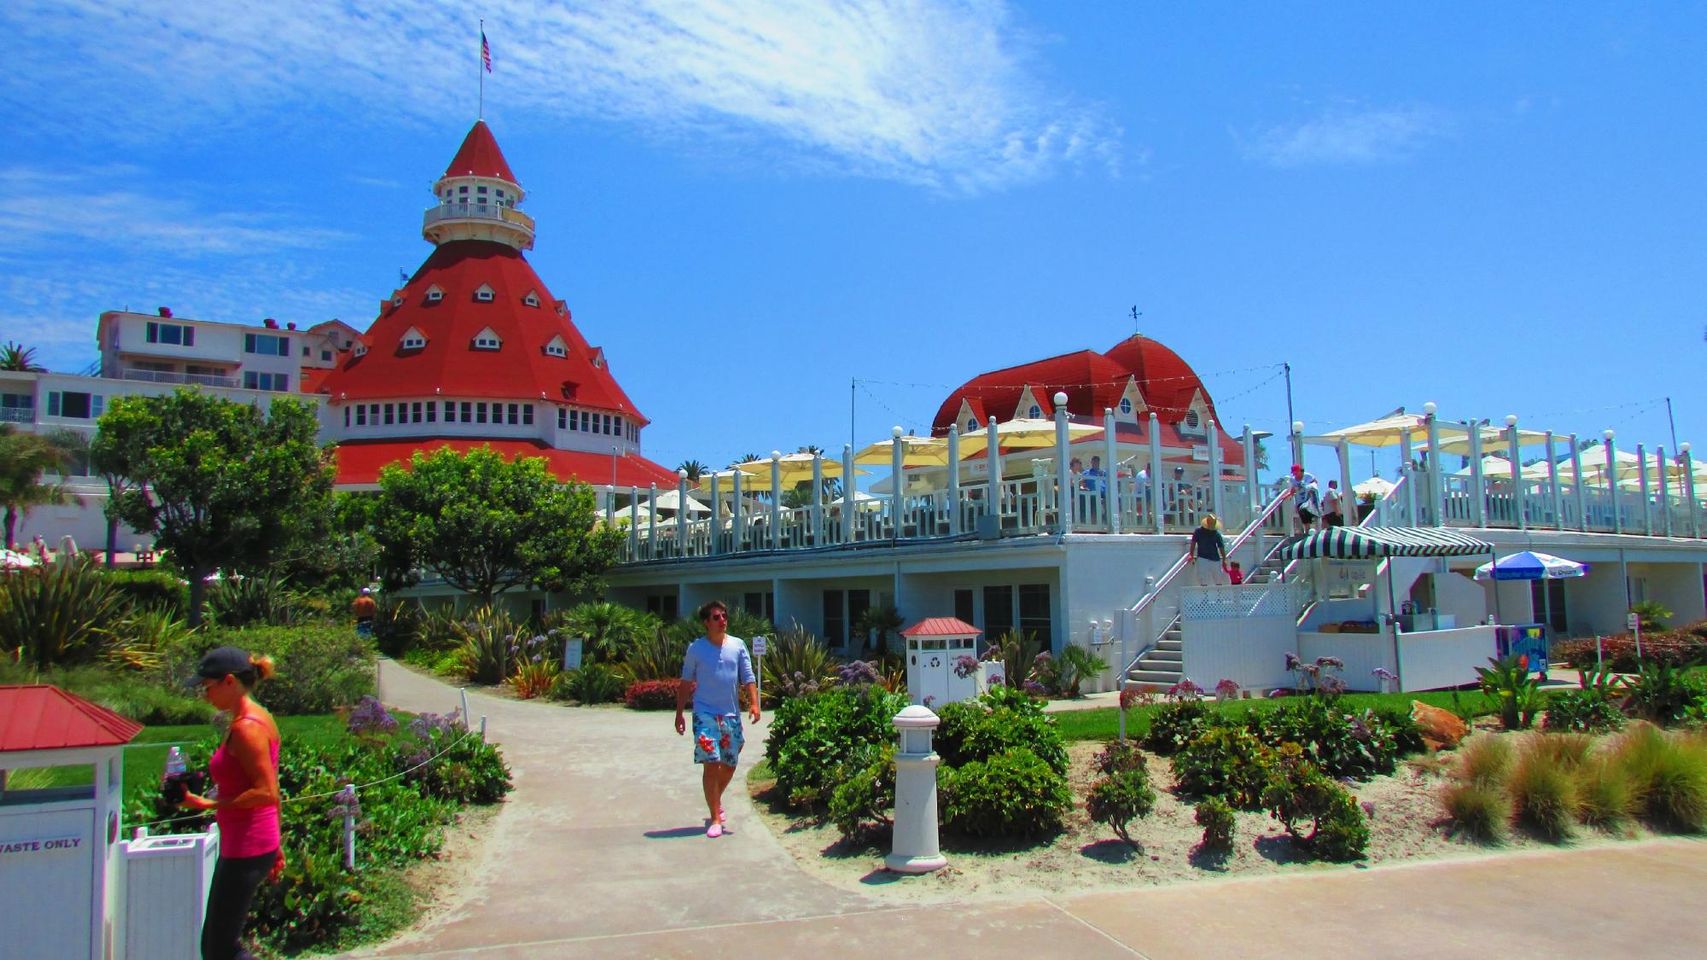 Entdecken Sie das abgeschiedene Paradies von Coronado Island: Eine Flucht zum ultimativen San Diego-Ausflug.